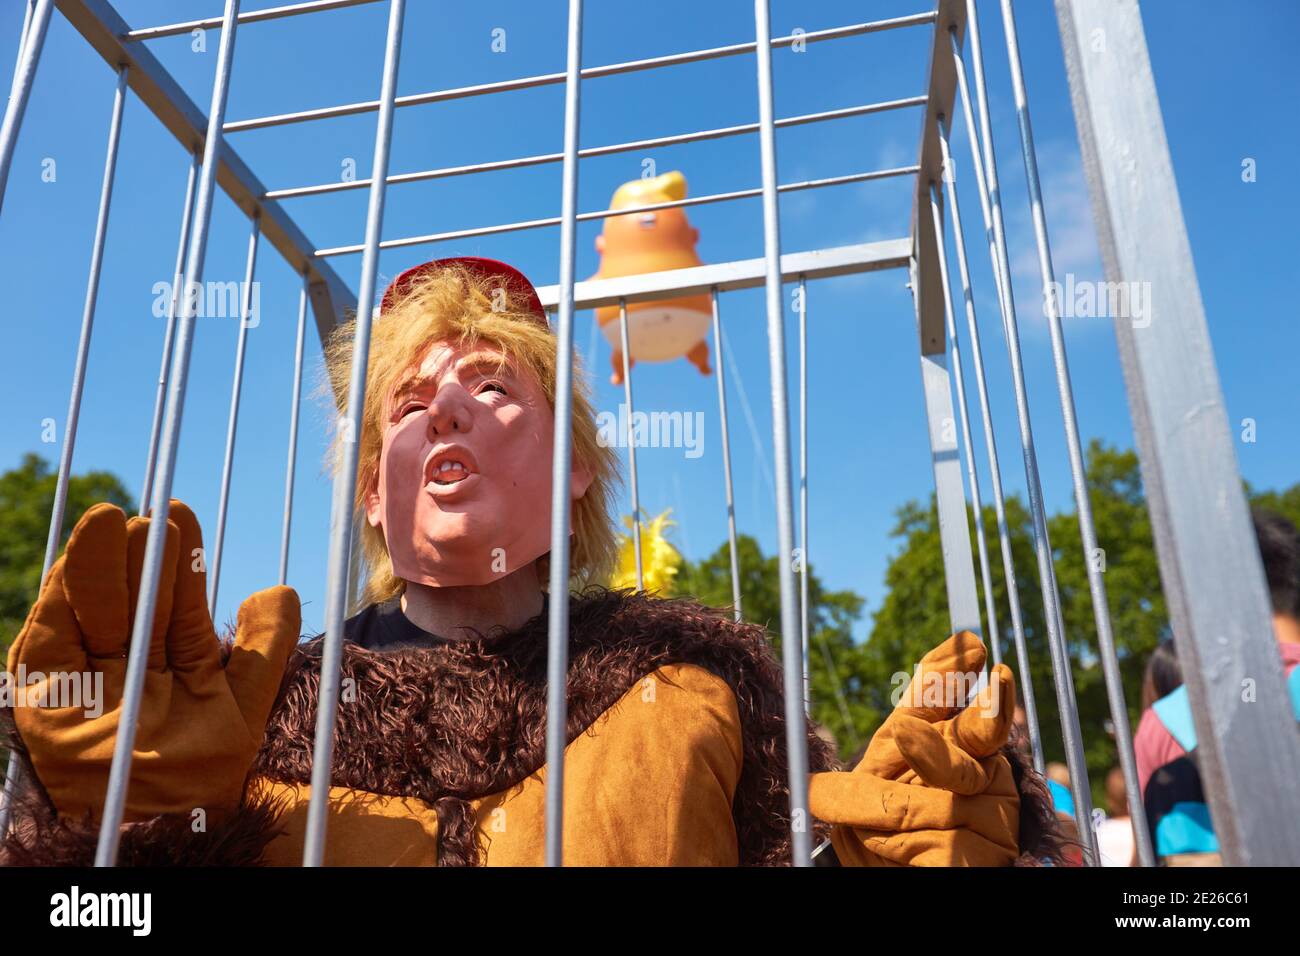 Protestor en una jaula vestida como Donald Trump en un Traje de gorila en la Plaza del Parlamento durante una visita oficial El Presidente de los Estados Unidos en Londres Foto de stock